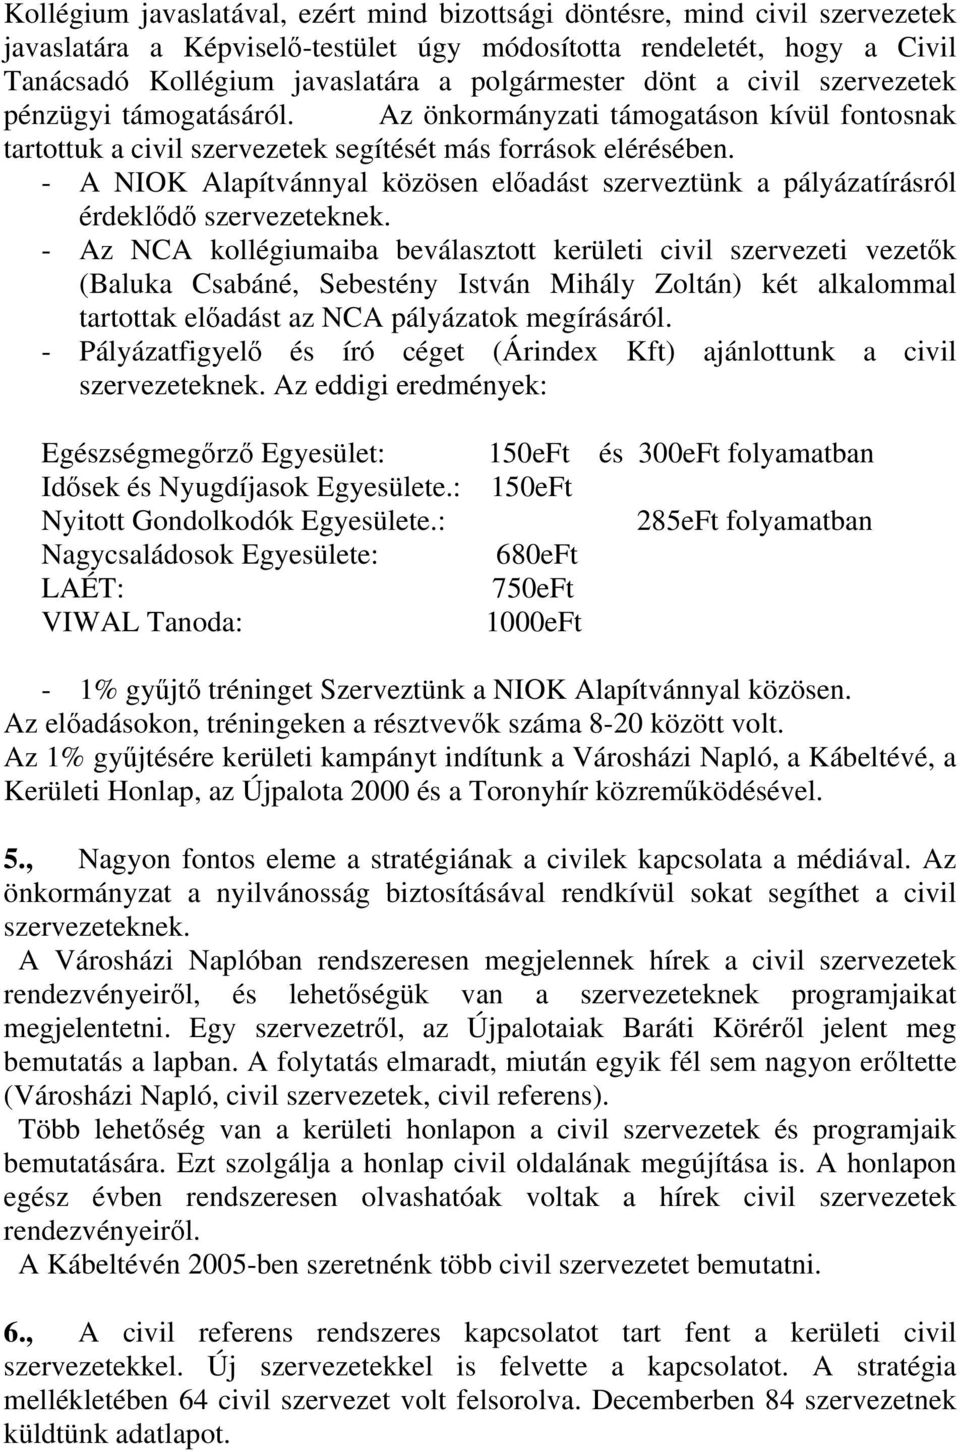 - A NIOK Alapítvánnyal közösen elıadást szerveztünk a pályázatírásról érdeklıdı szervezeteknek.